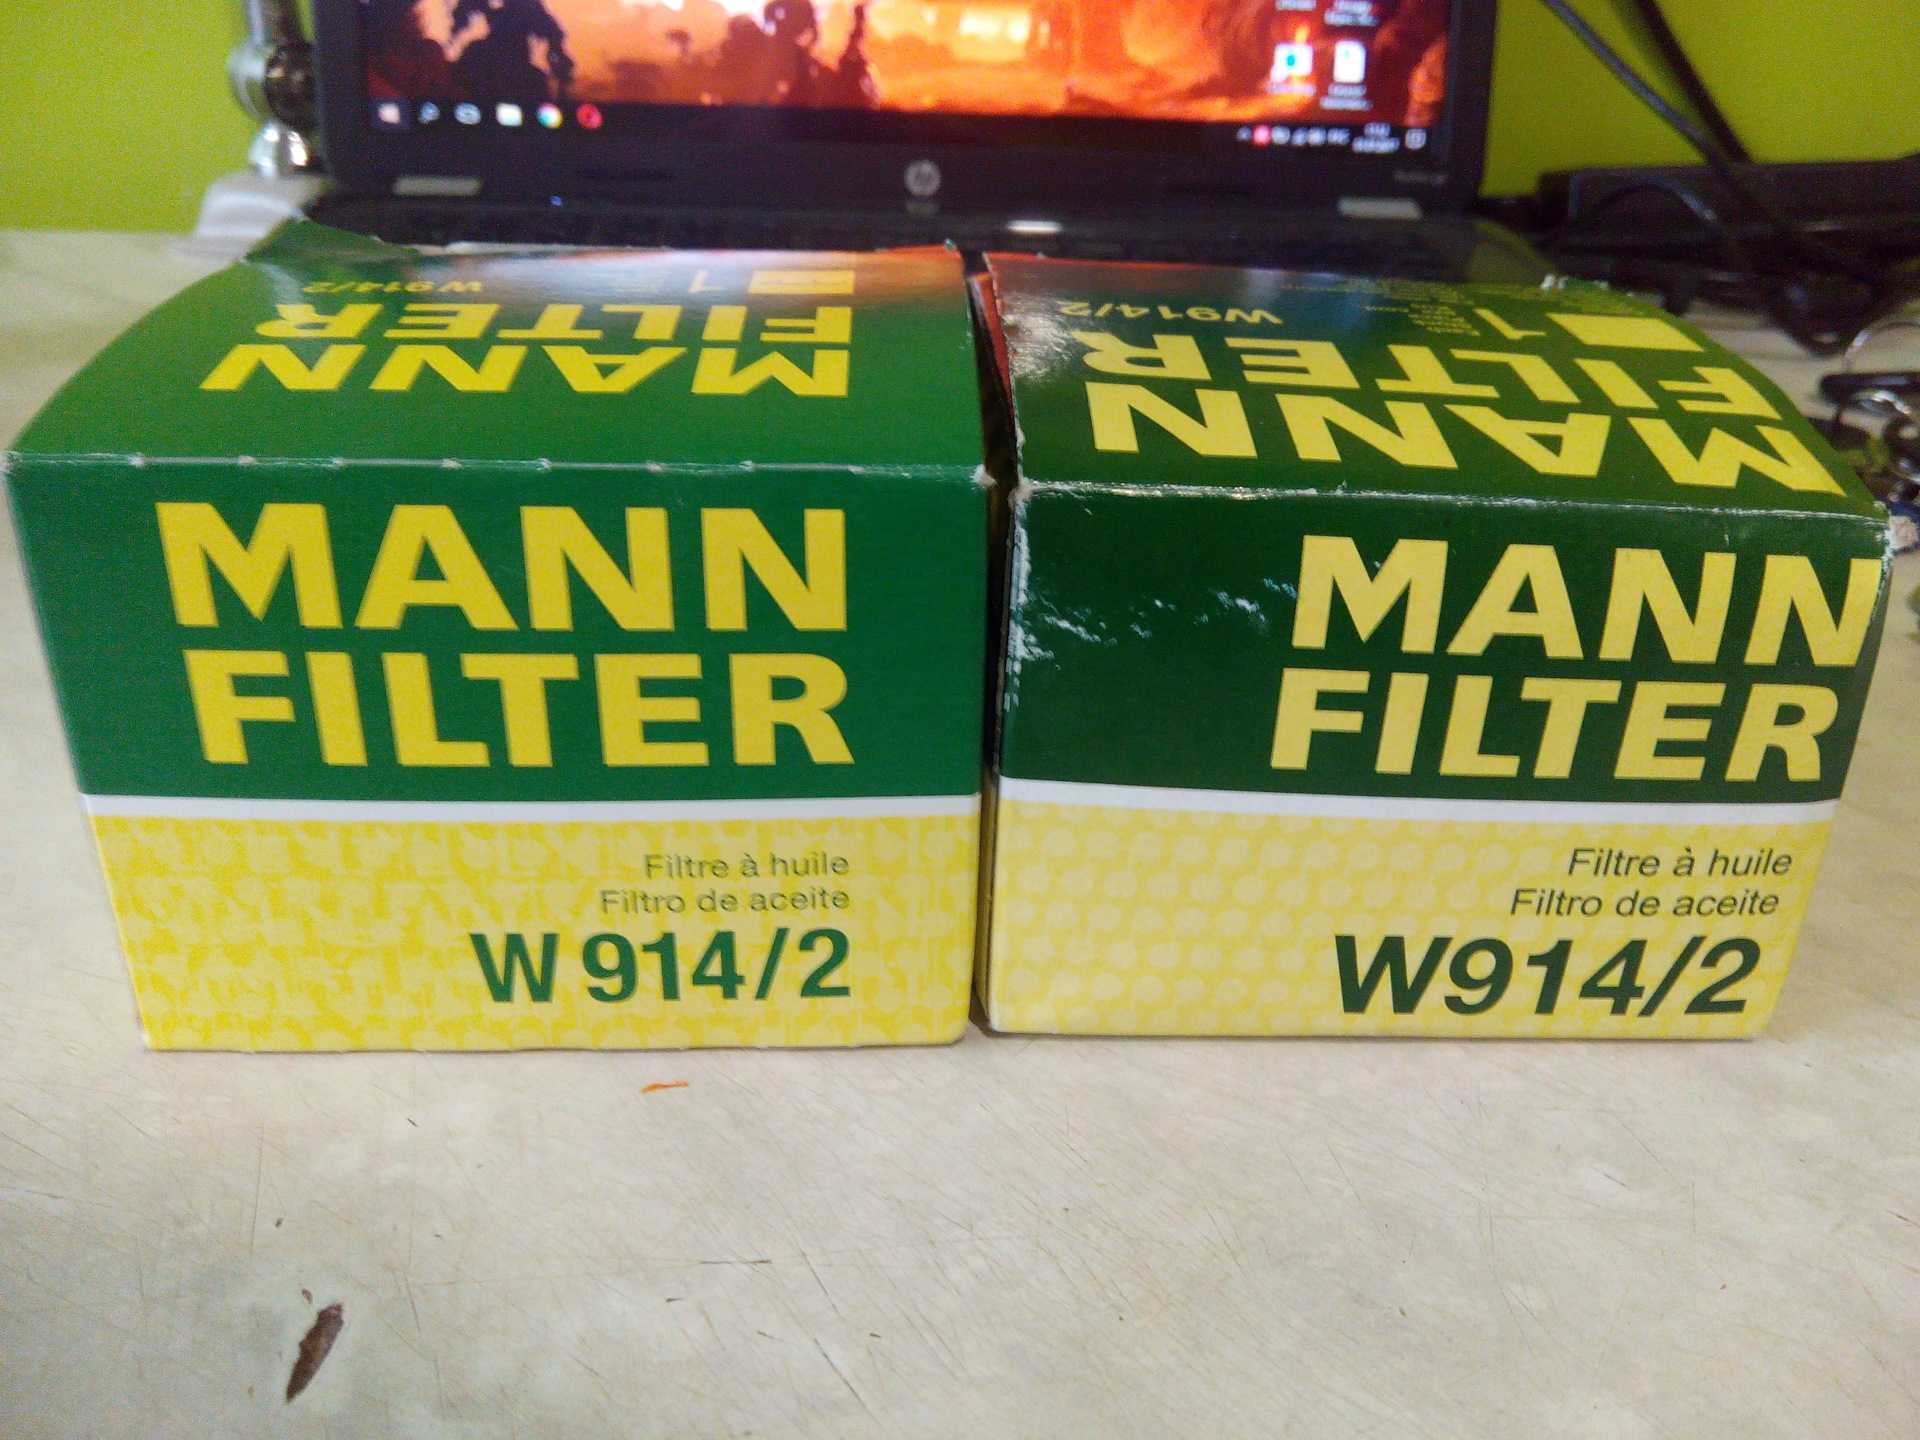 Масляный фильтр манн оригинал. Фильтр Mann w914/2. Фильтр масляный Mann w9142. Фильтр масляный Mann-Filter w914/2.